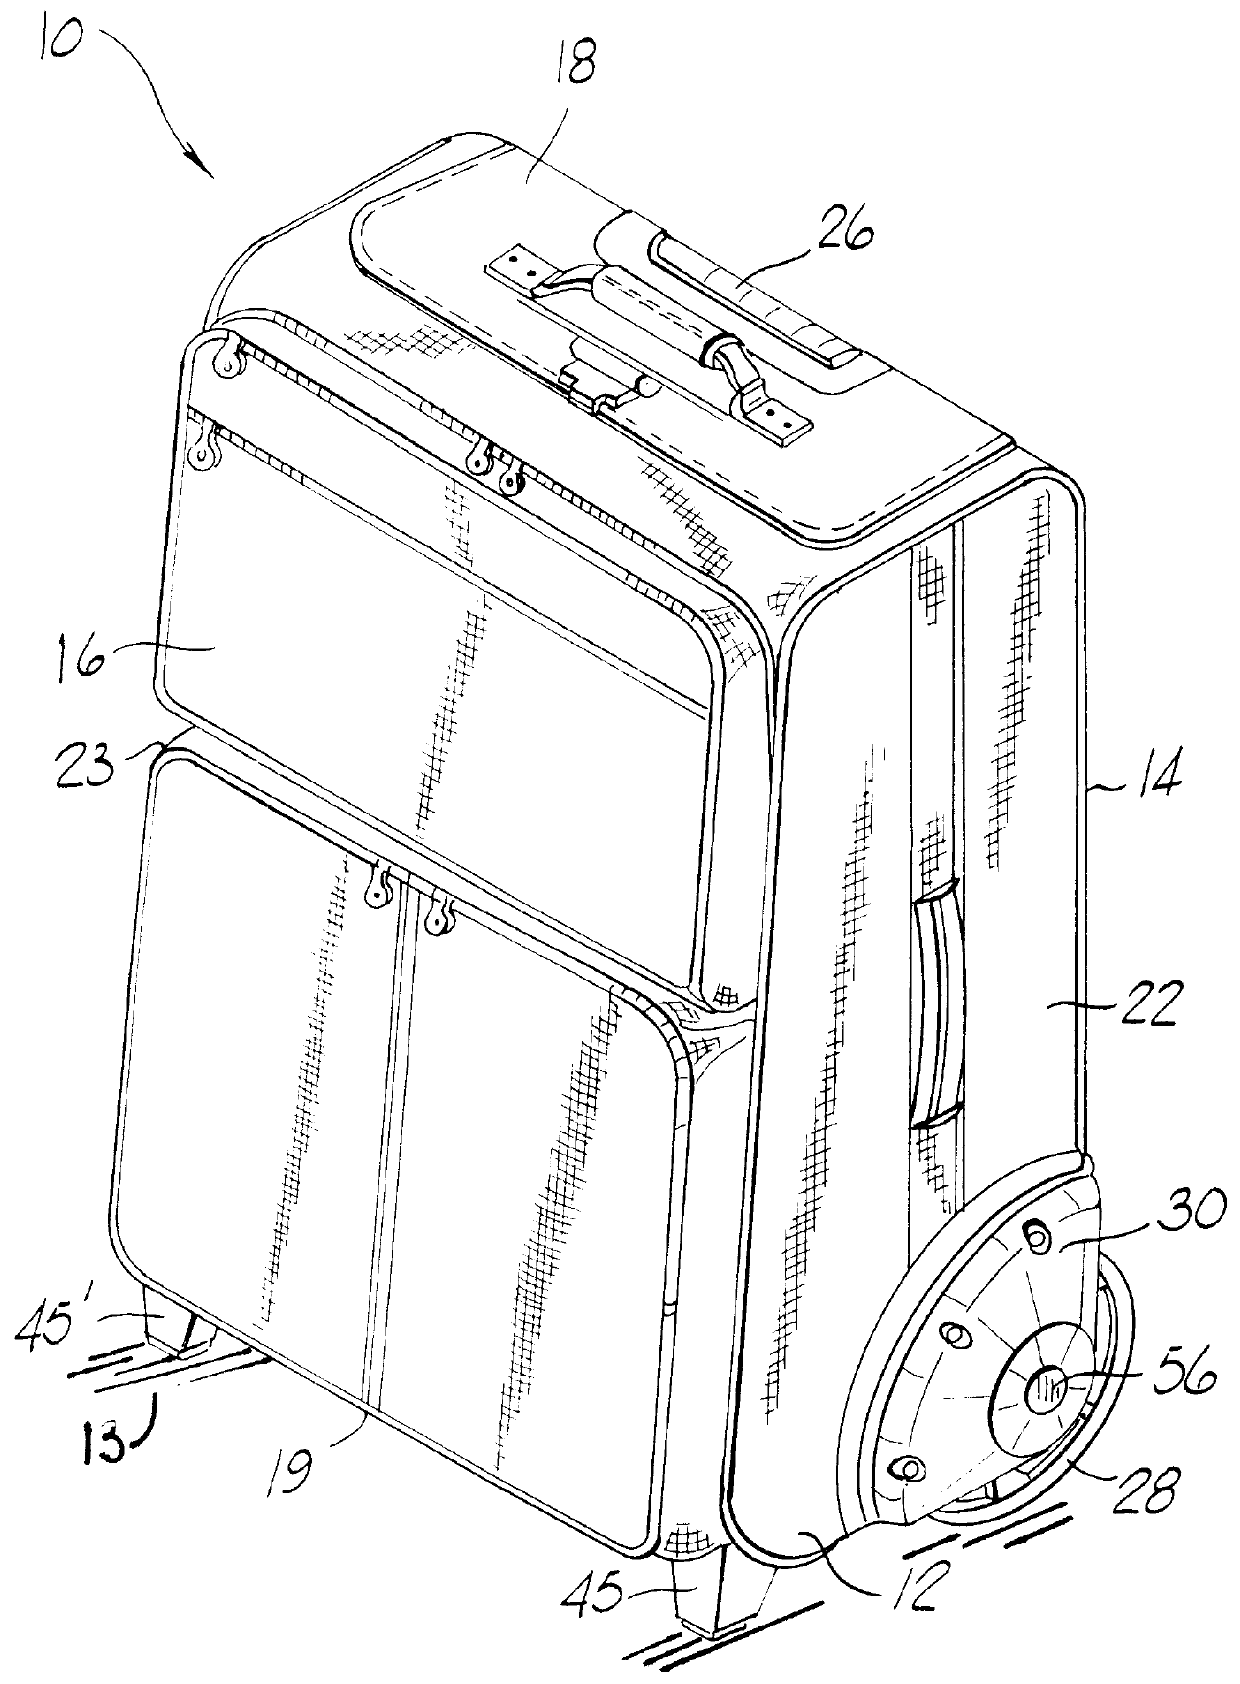 Large-wheeled luggage case